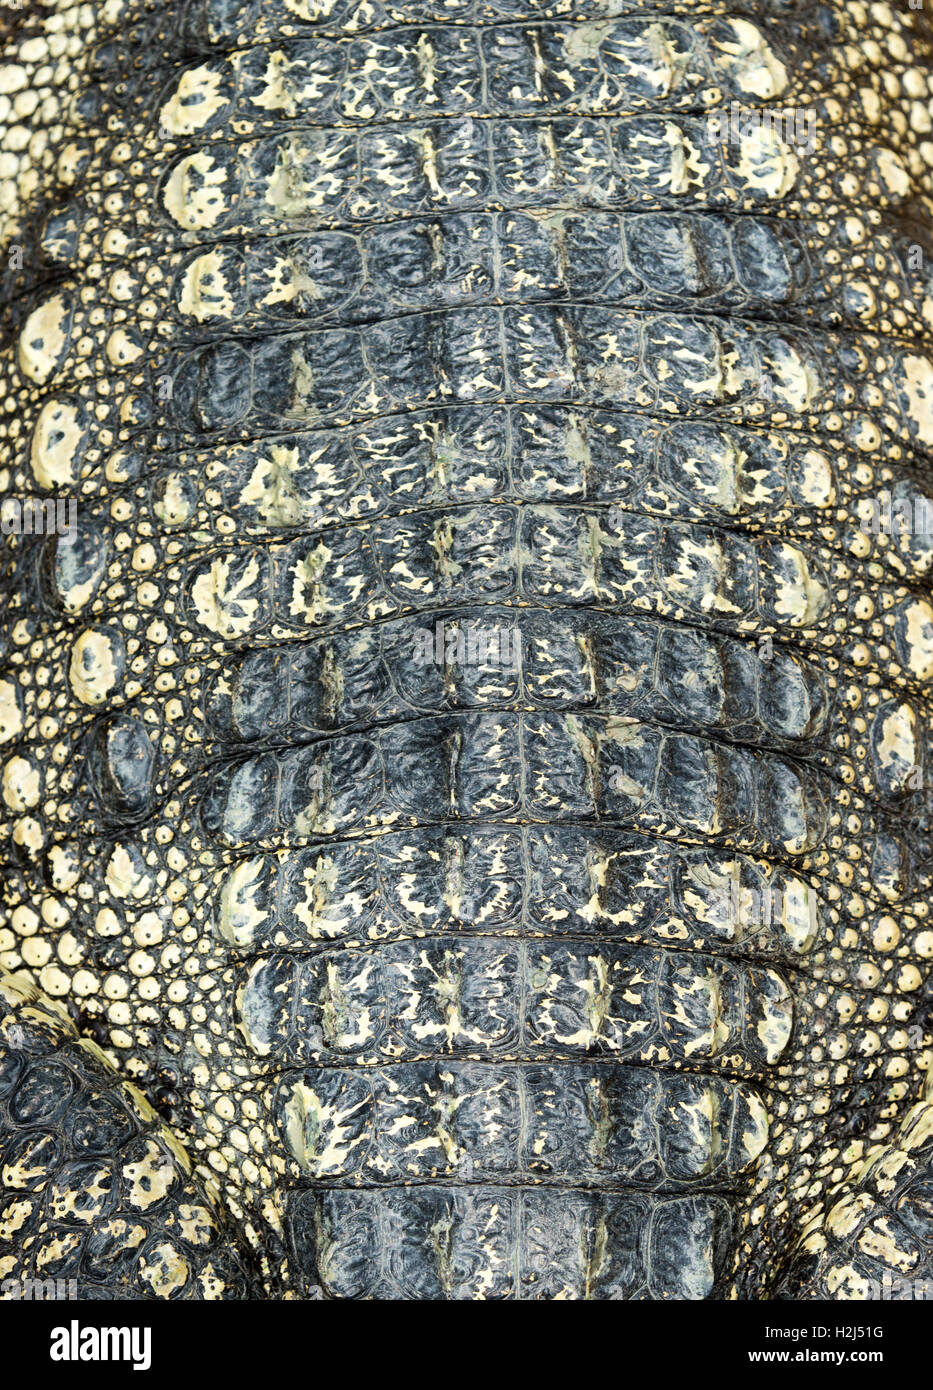 Crocodile skin texture Stock Photo